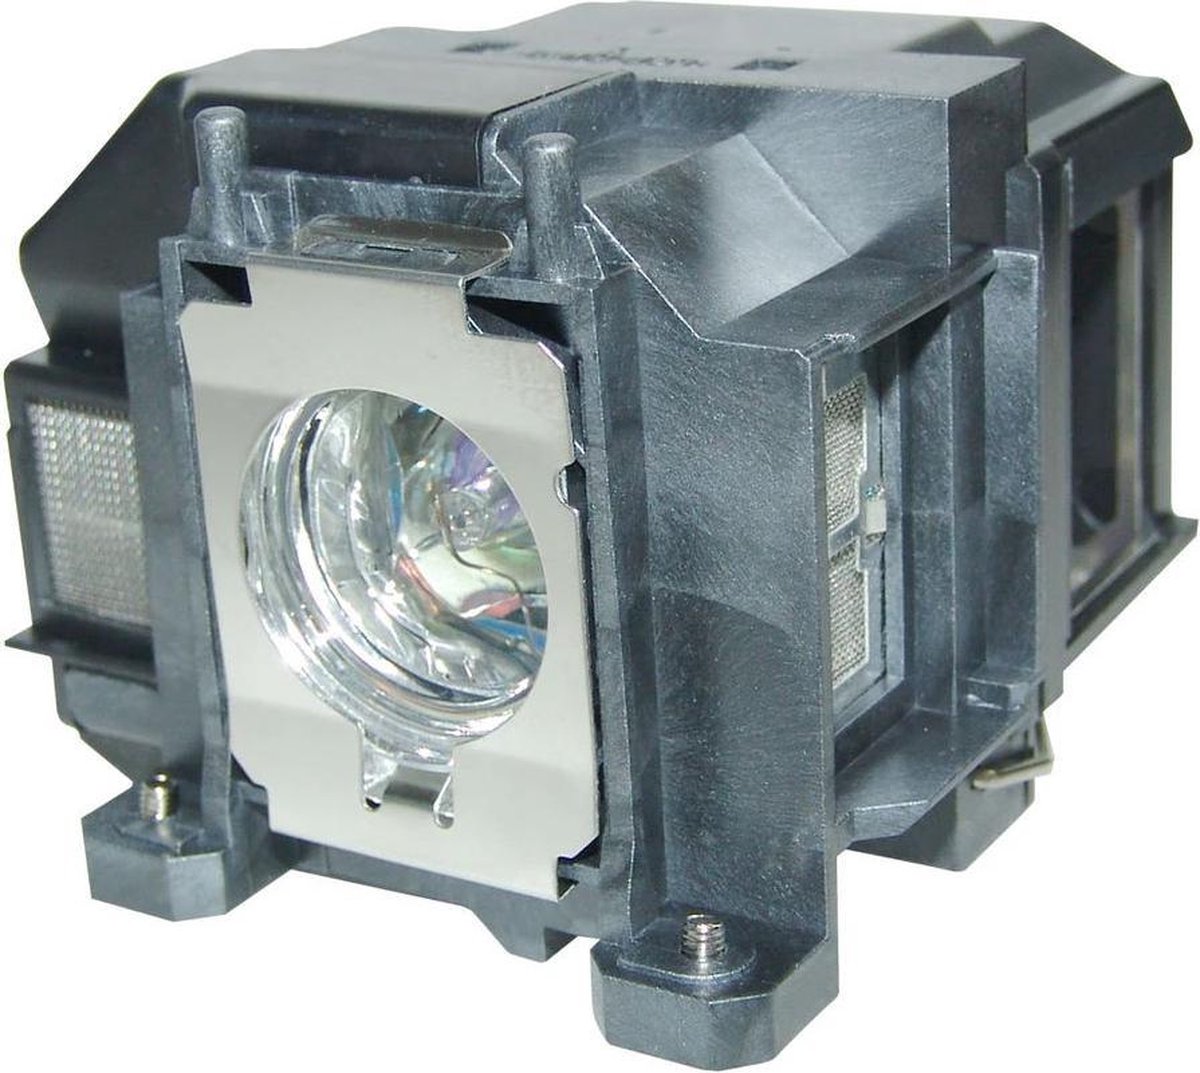 Beamerlamp geschikt voor de EPSON EB-S11H beamer, lamp code LP67 / V13H010L67. Bevat originele P-VIP lamp, prestaties gelijk aan origineel.